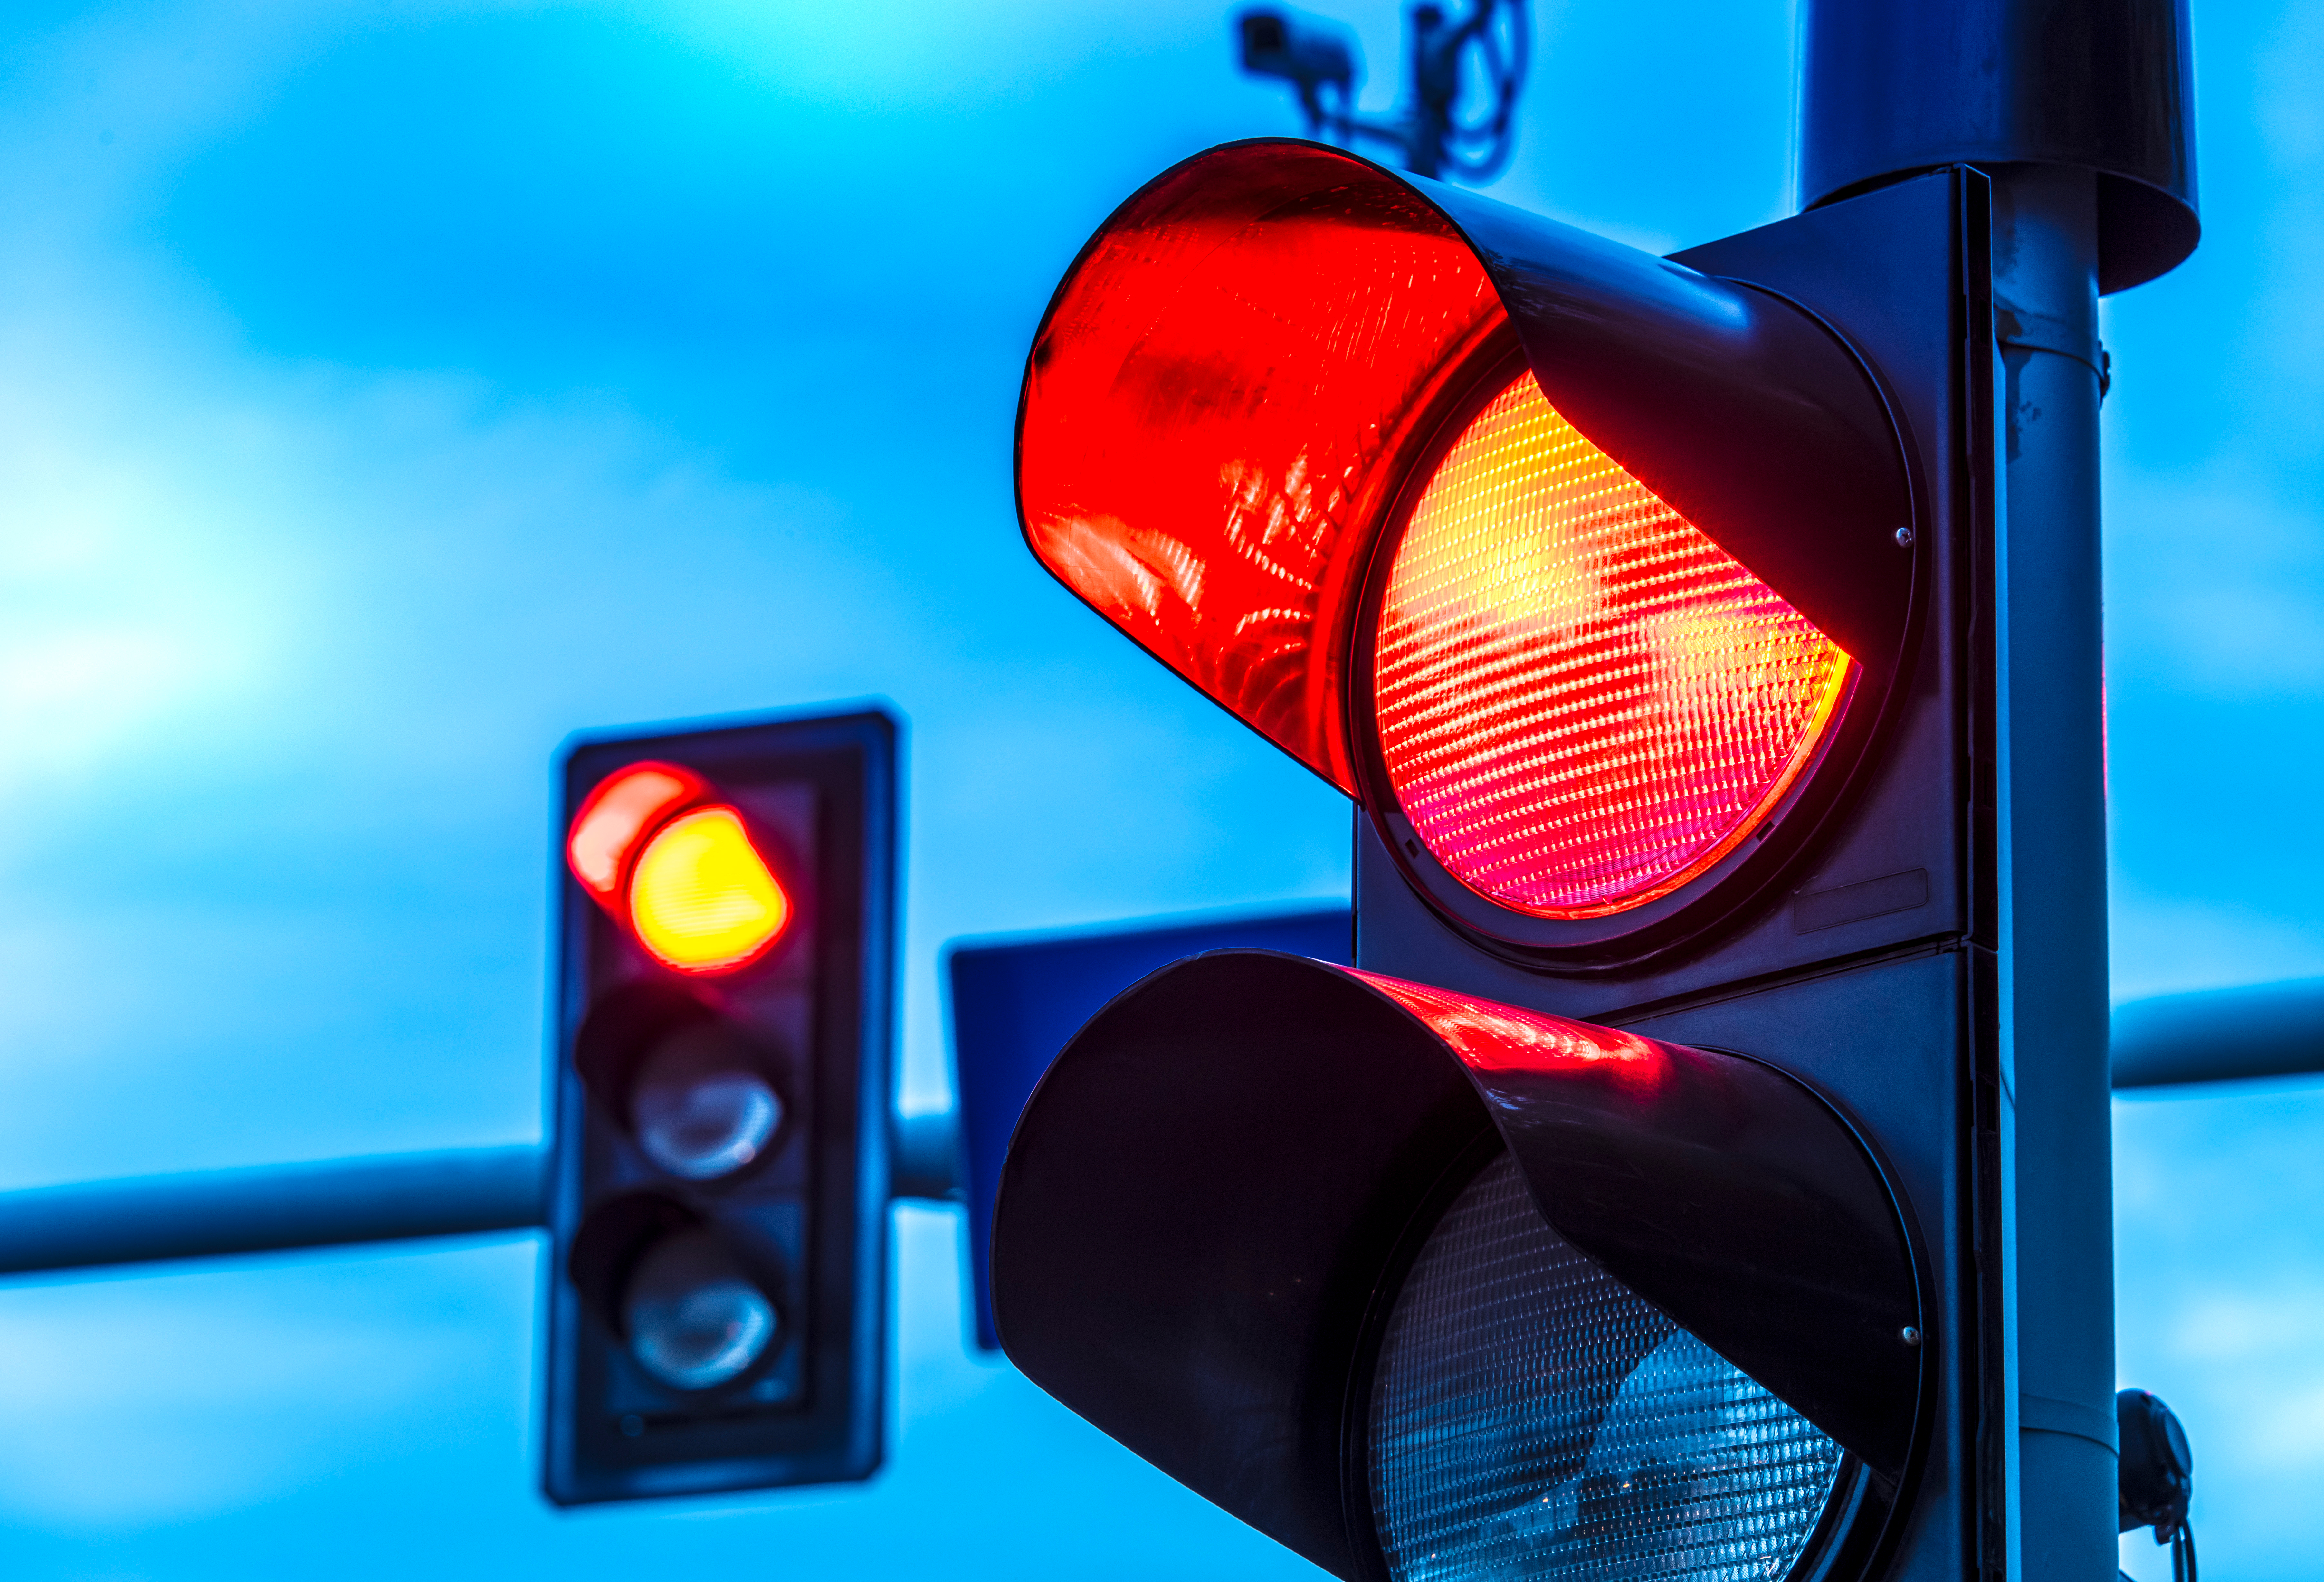 Red light | Source: Shutterstock